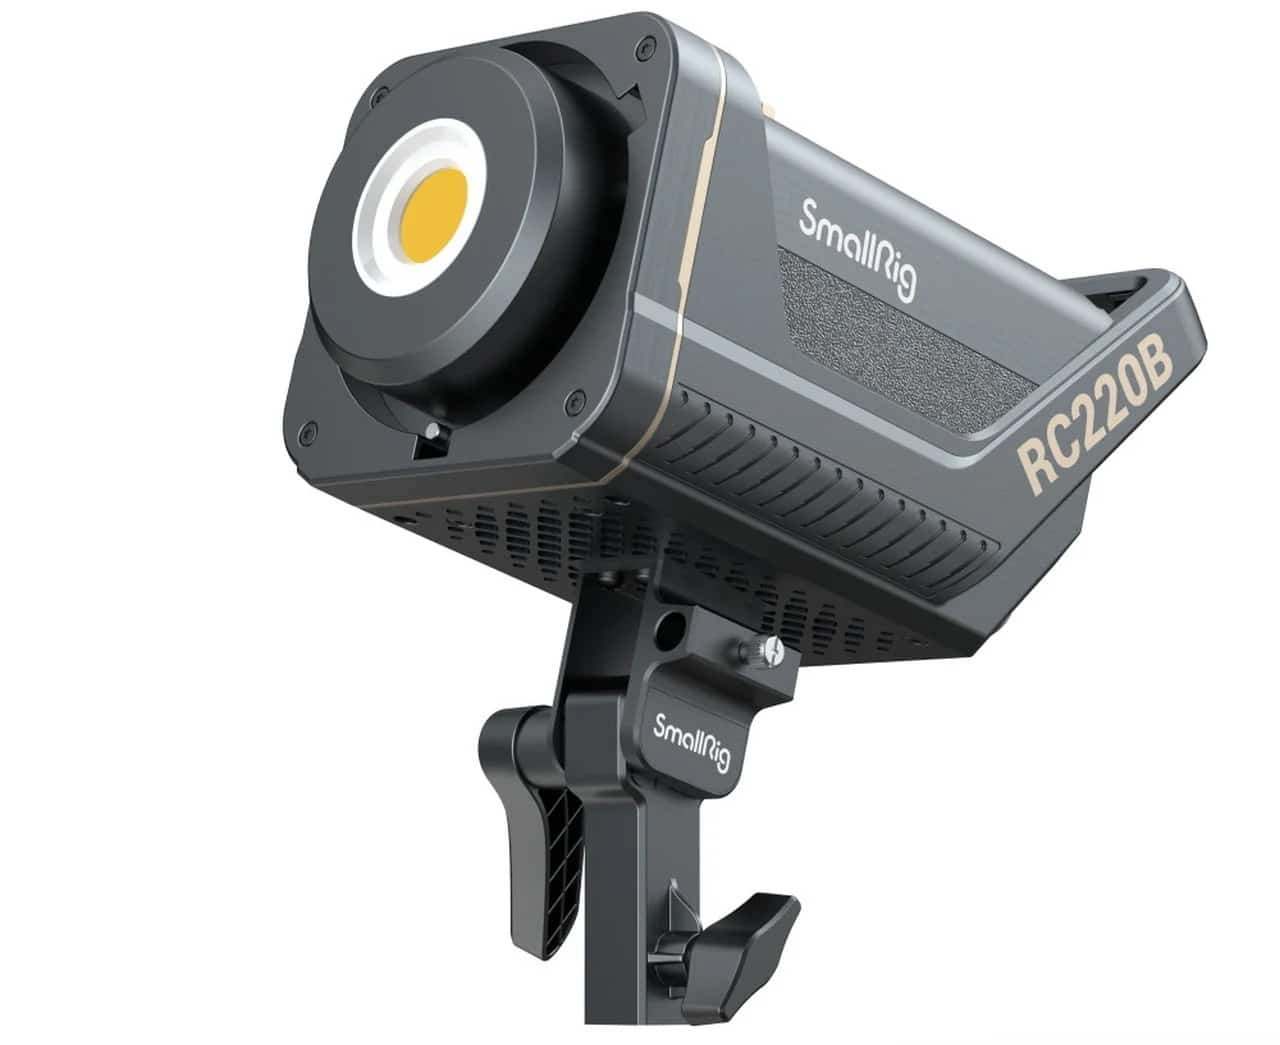 SmallRig ra mắt đèn LED studio RC220 với kích thước nhỏ nhưng độ sáng cực kỳ ấn tượng